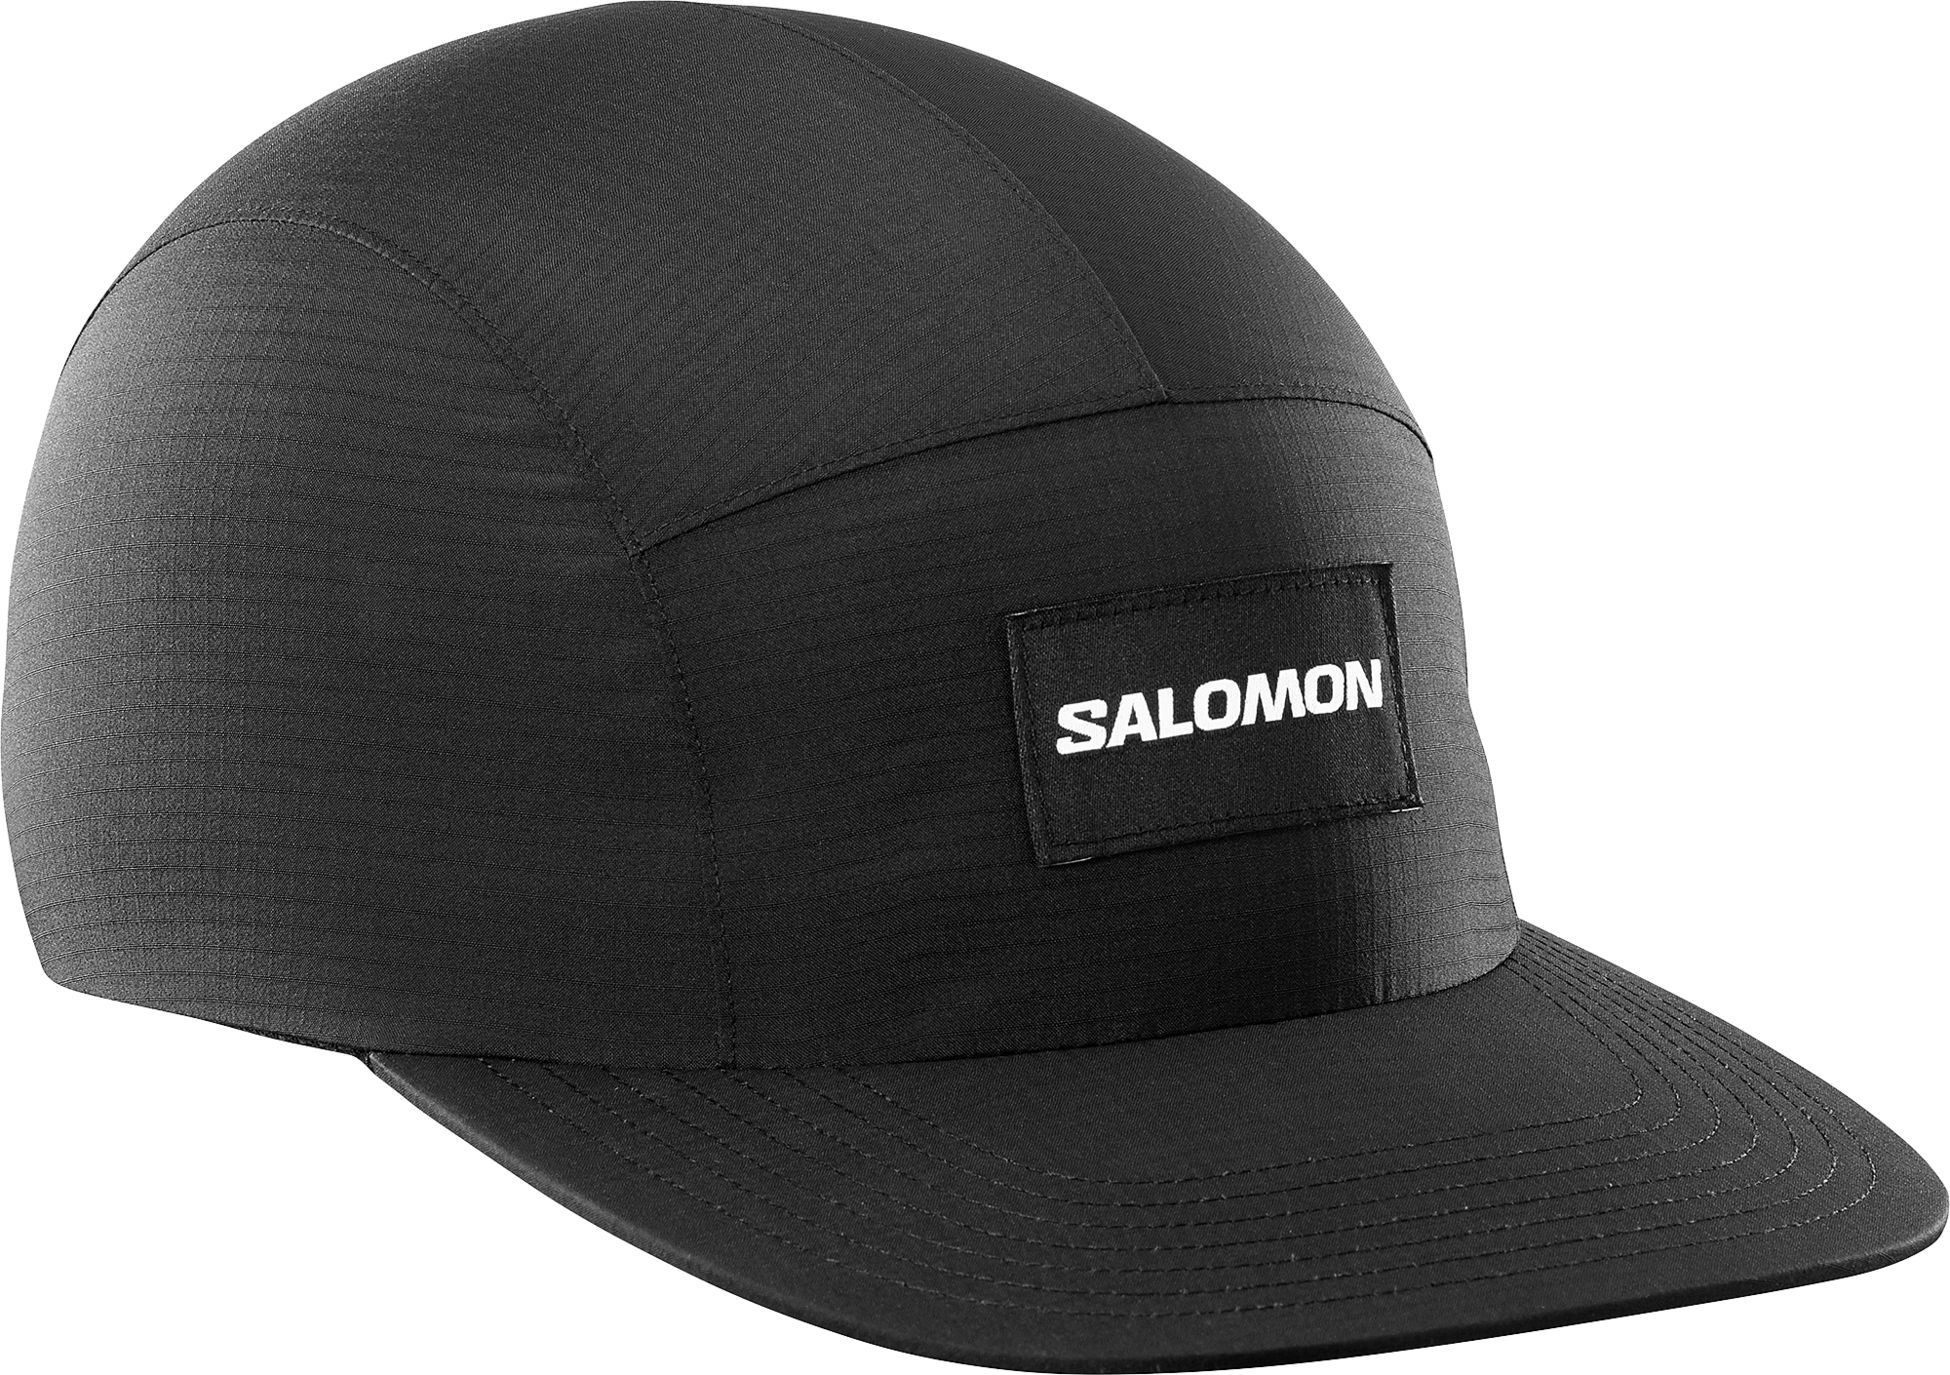 SALOMON, BONATTI FIVE PANEL CAP